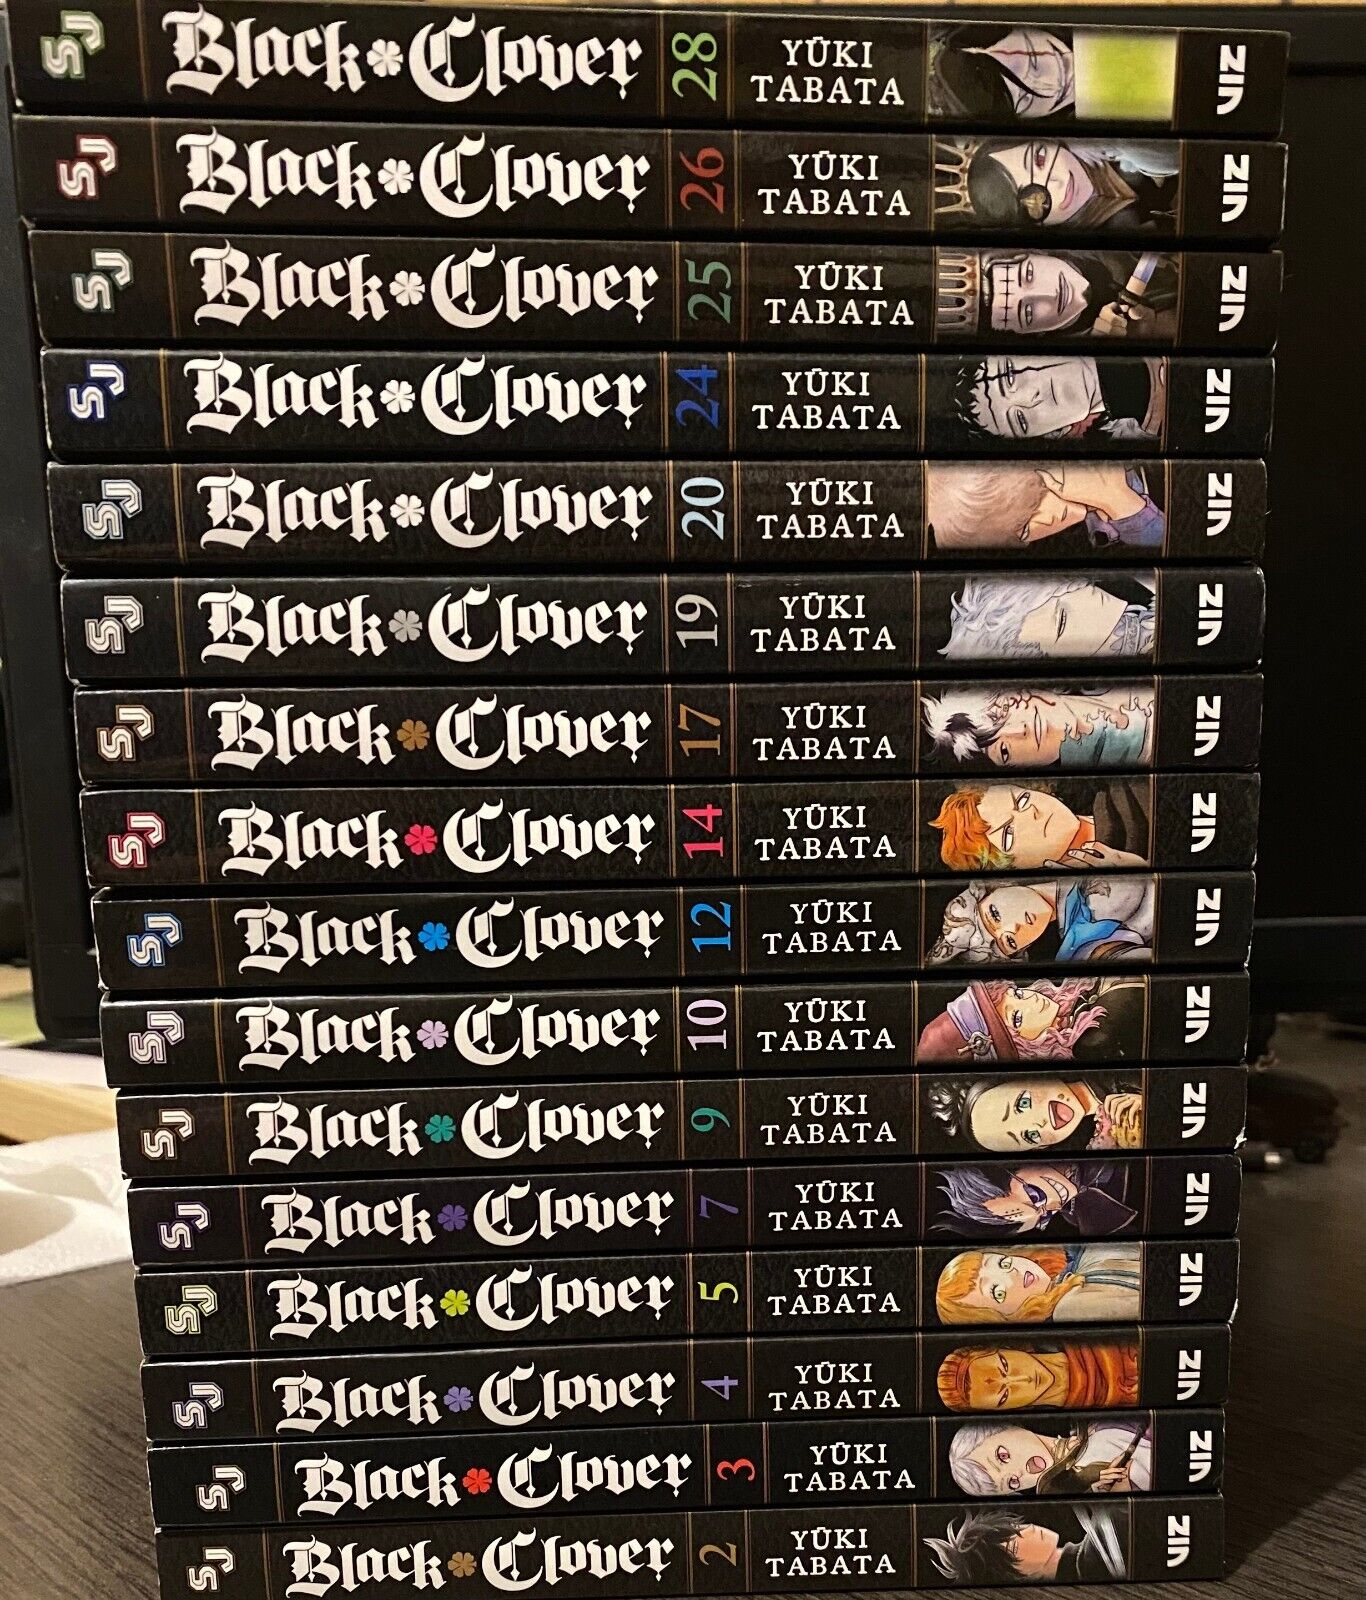 Pick & Choose Black Clover Manga Lot - English